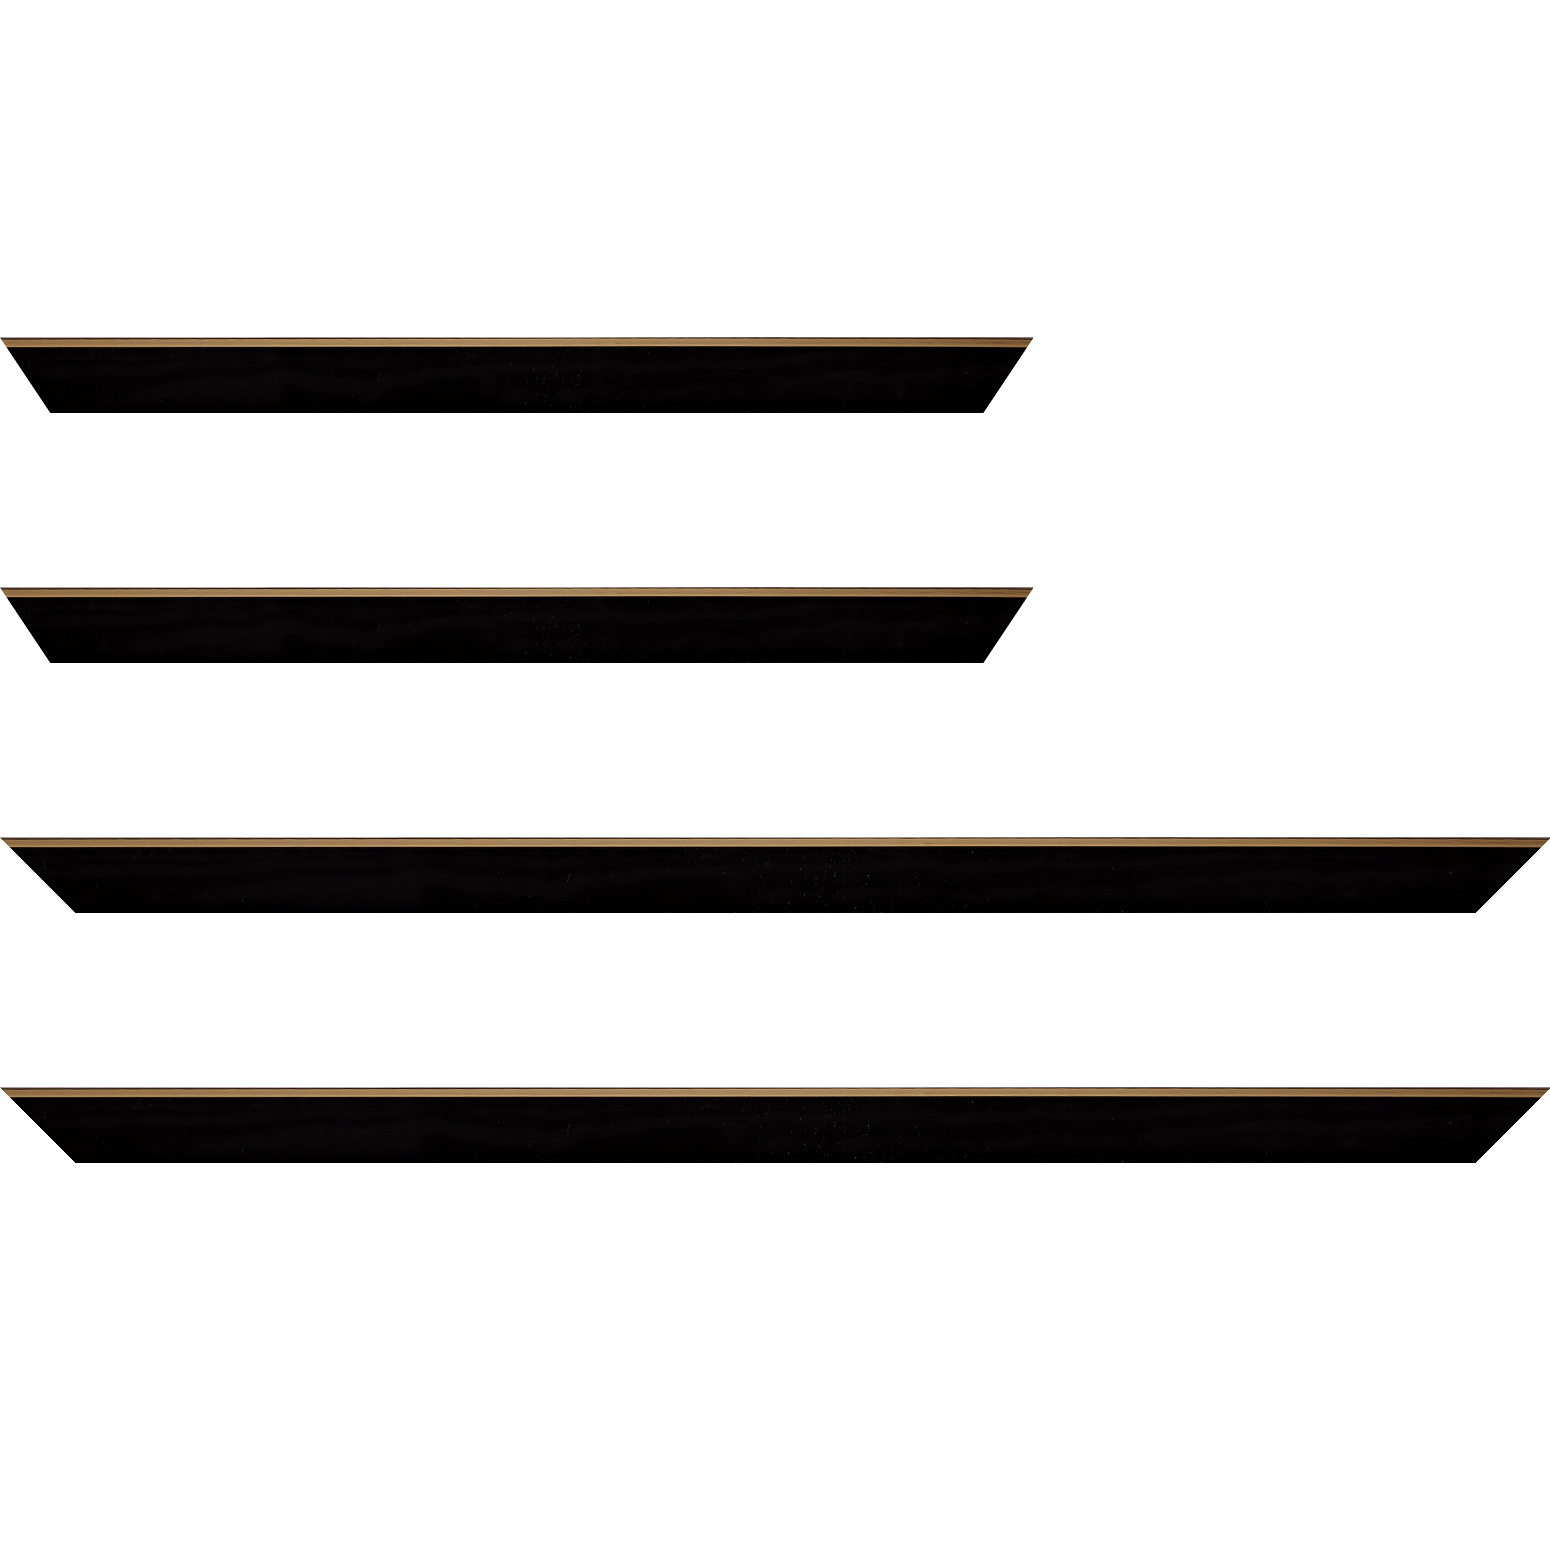 Baguette bois profil arrondi en pente plongeant largeur 2.4cm couleur noir satiné,veine du bois  apparent (pin) , angle du cadre extérieur filet or chromé